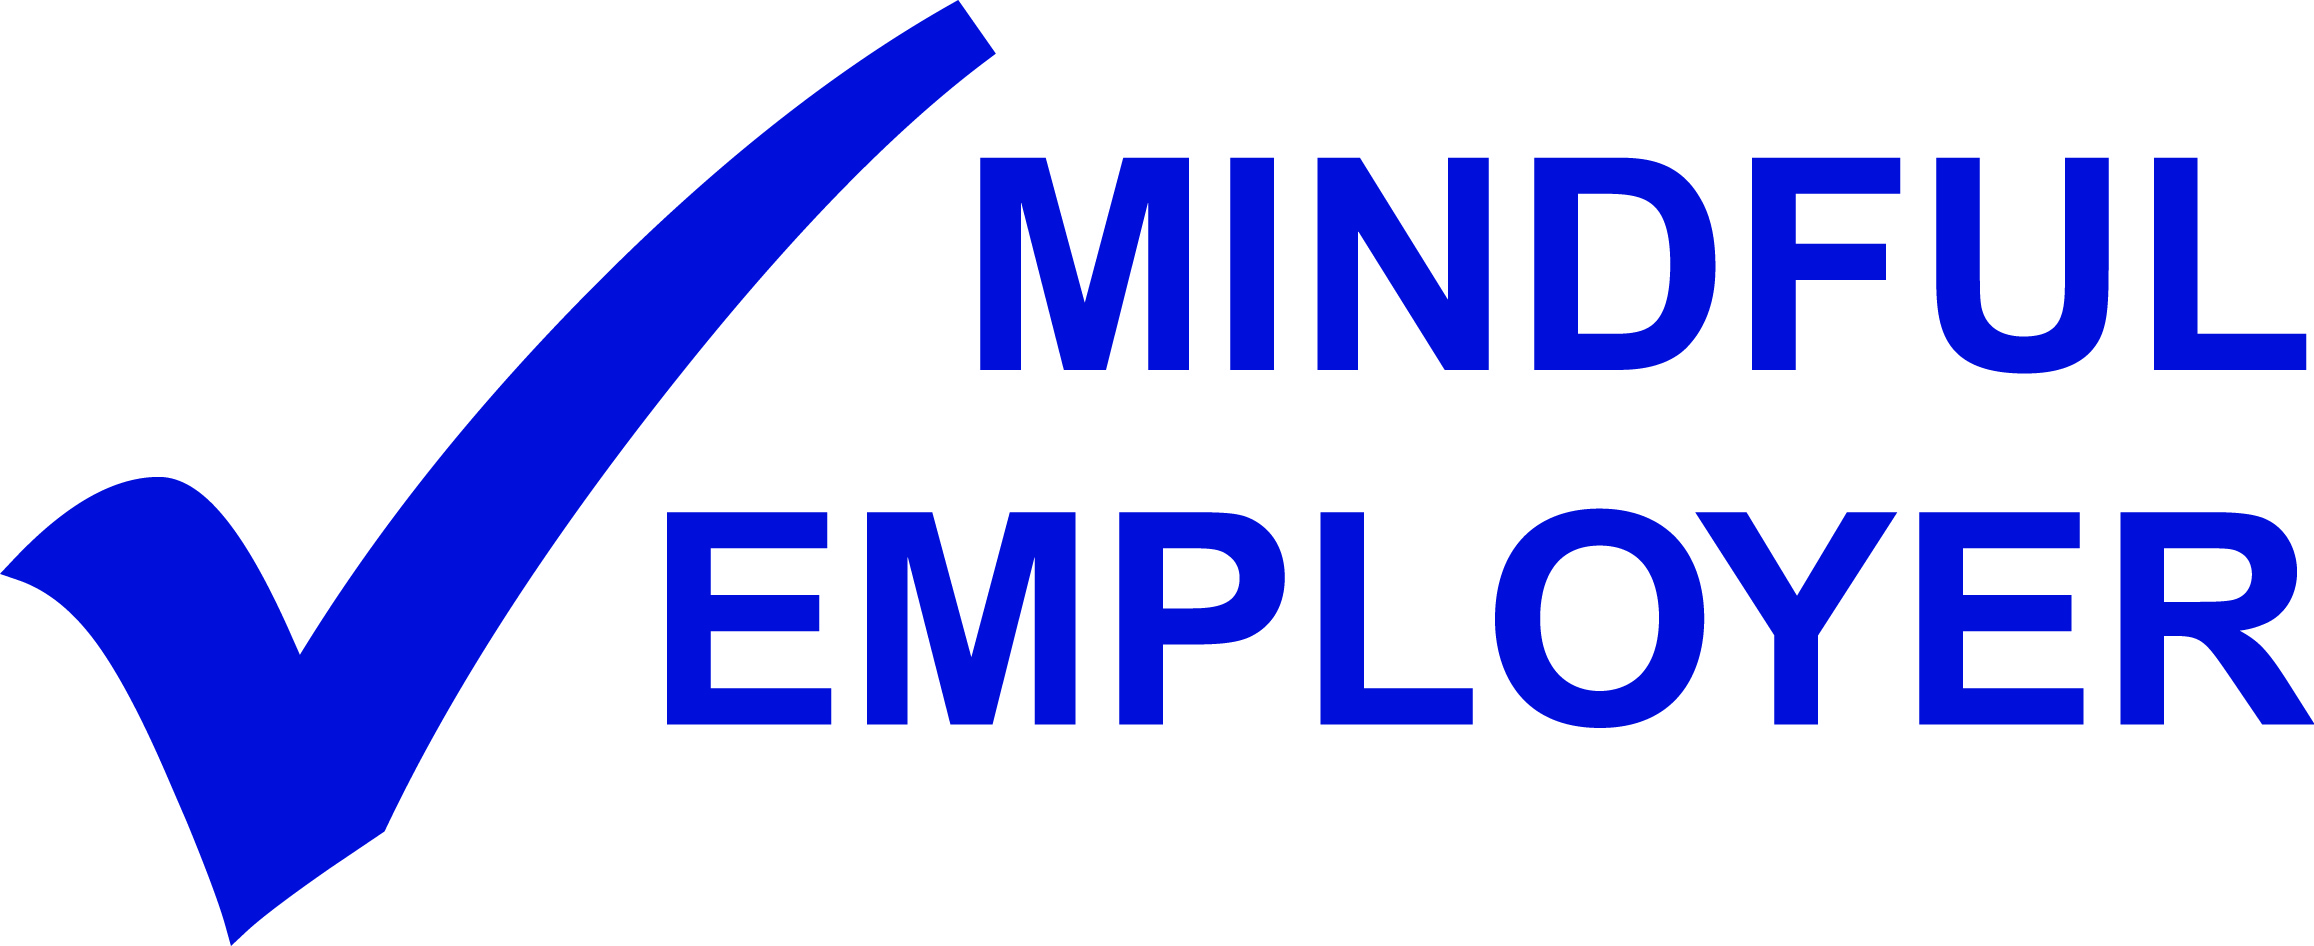 1 Mindful Employer logo blue jpeg 002